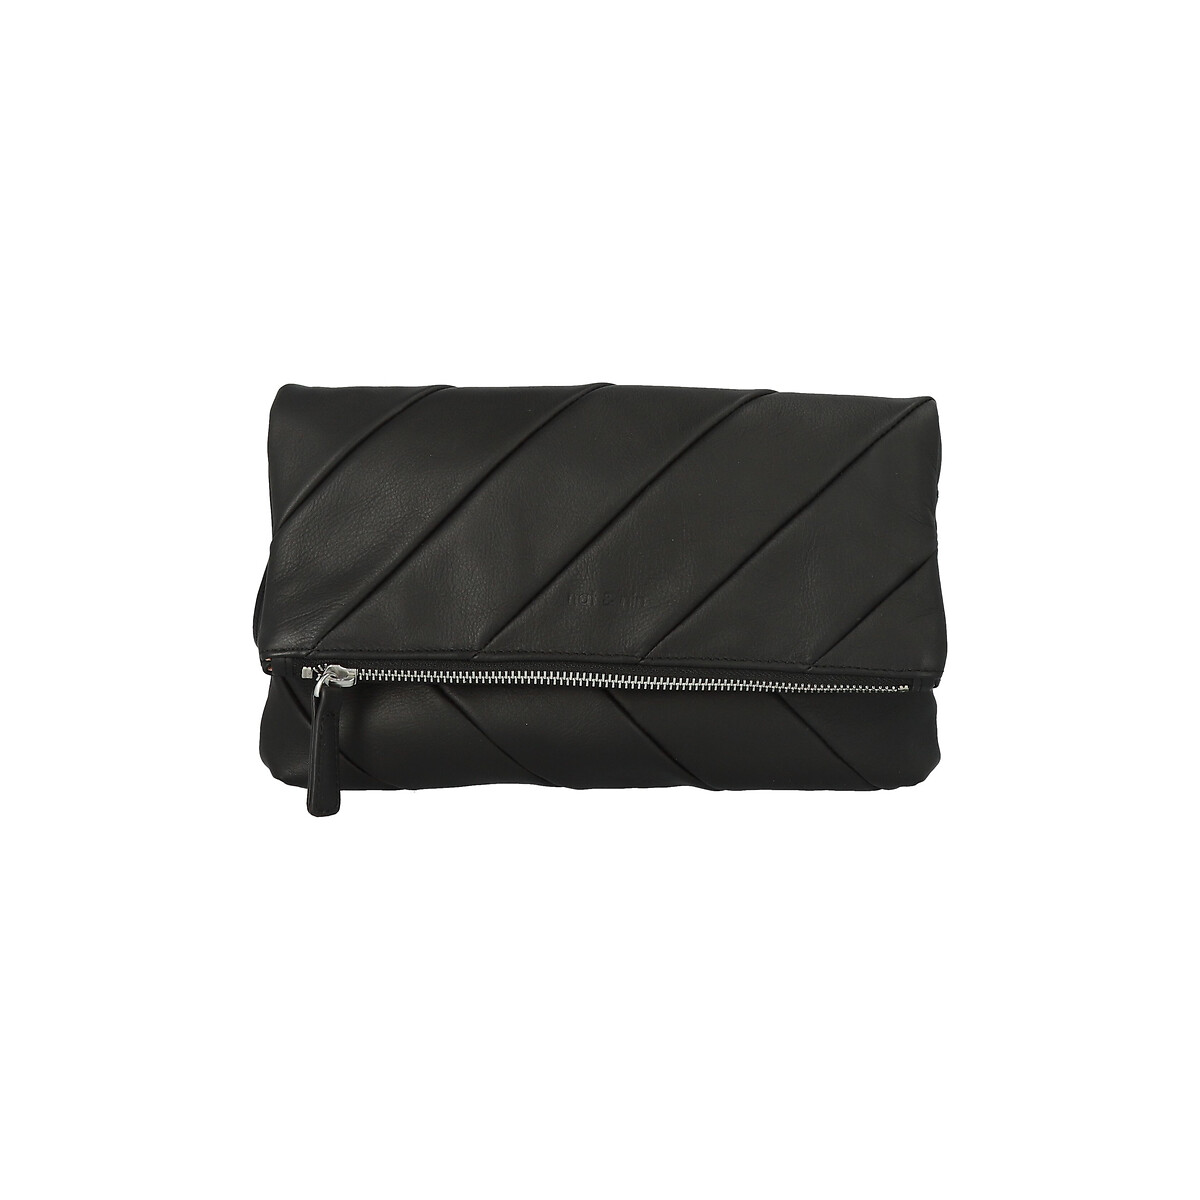 Piper Leather Clutch Bag